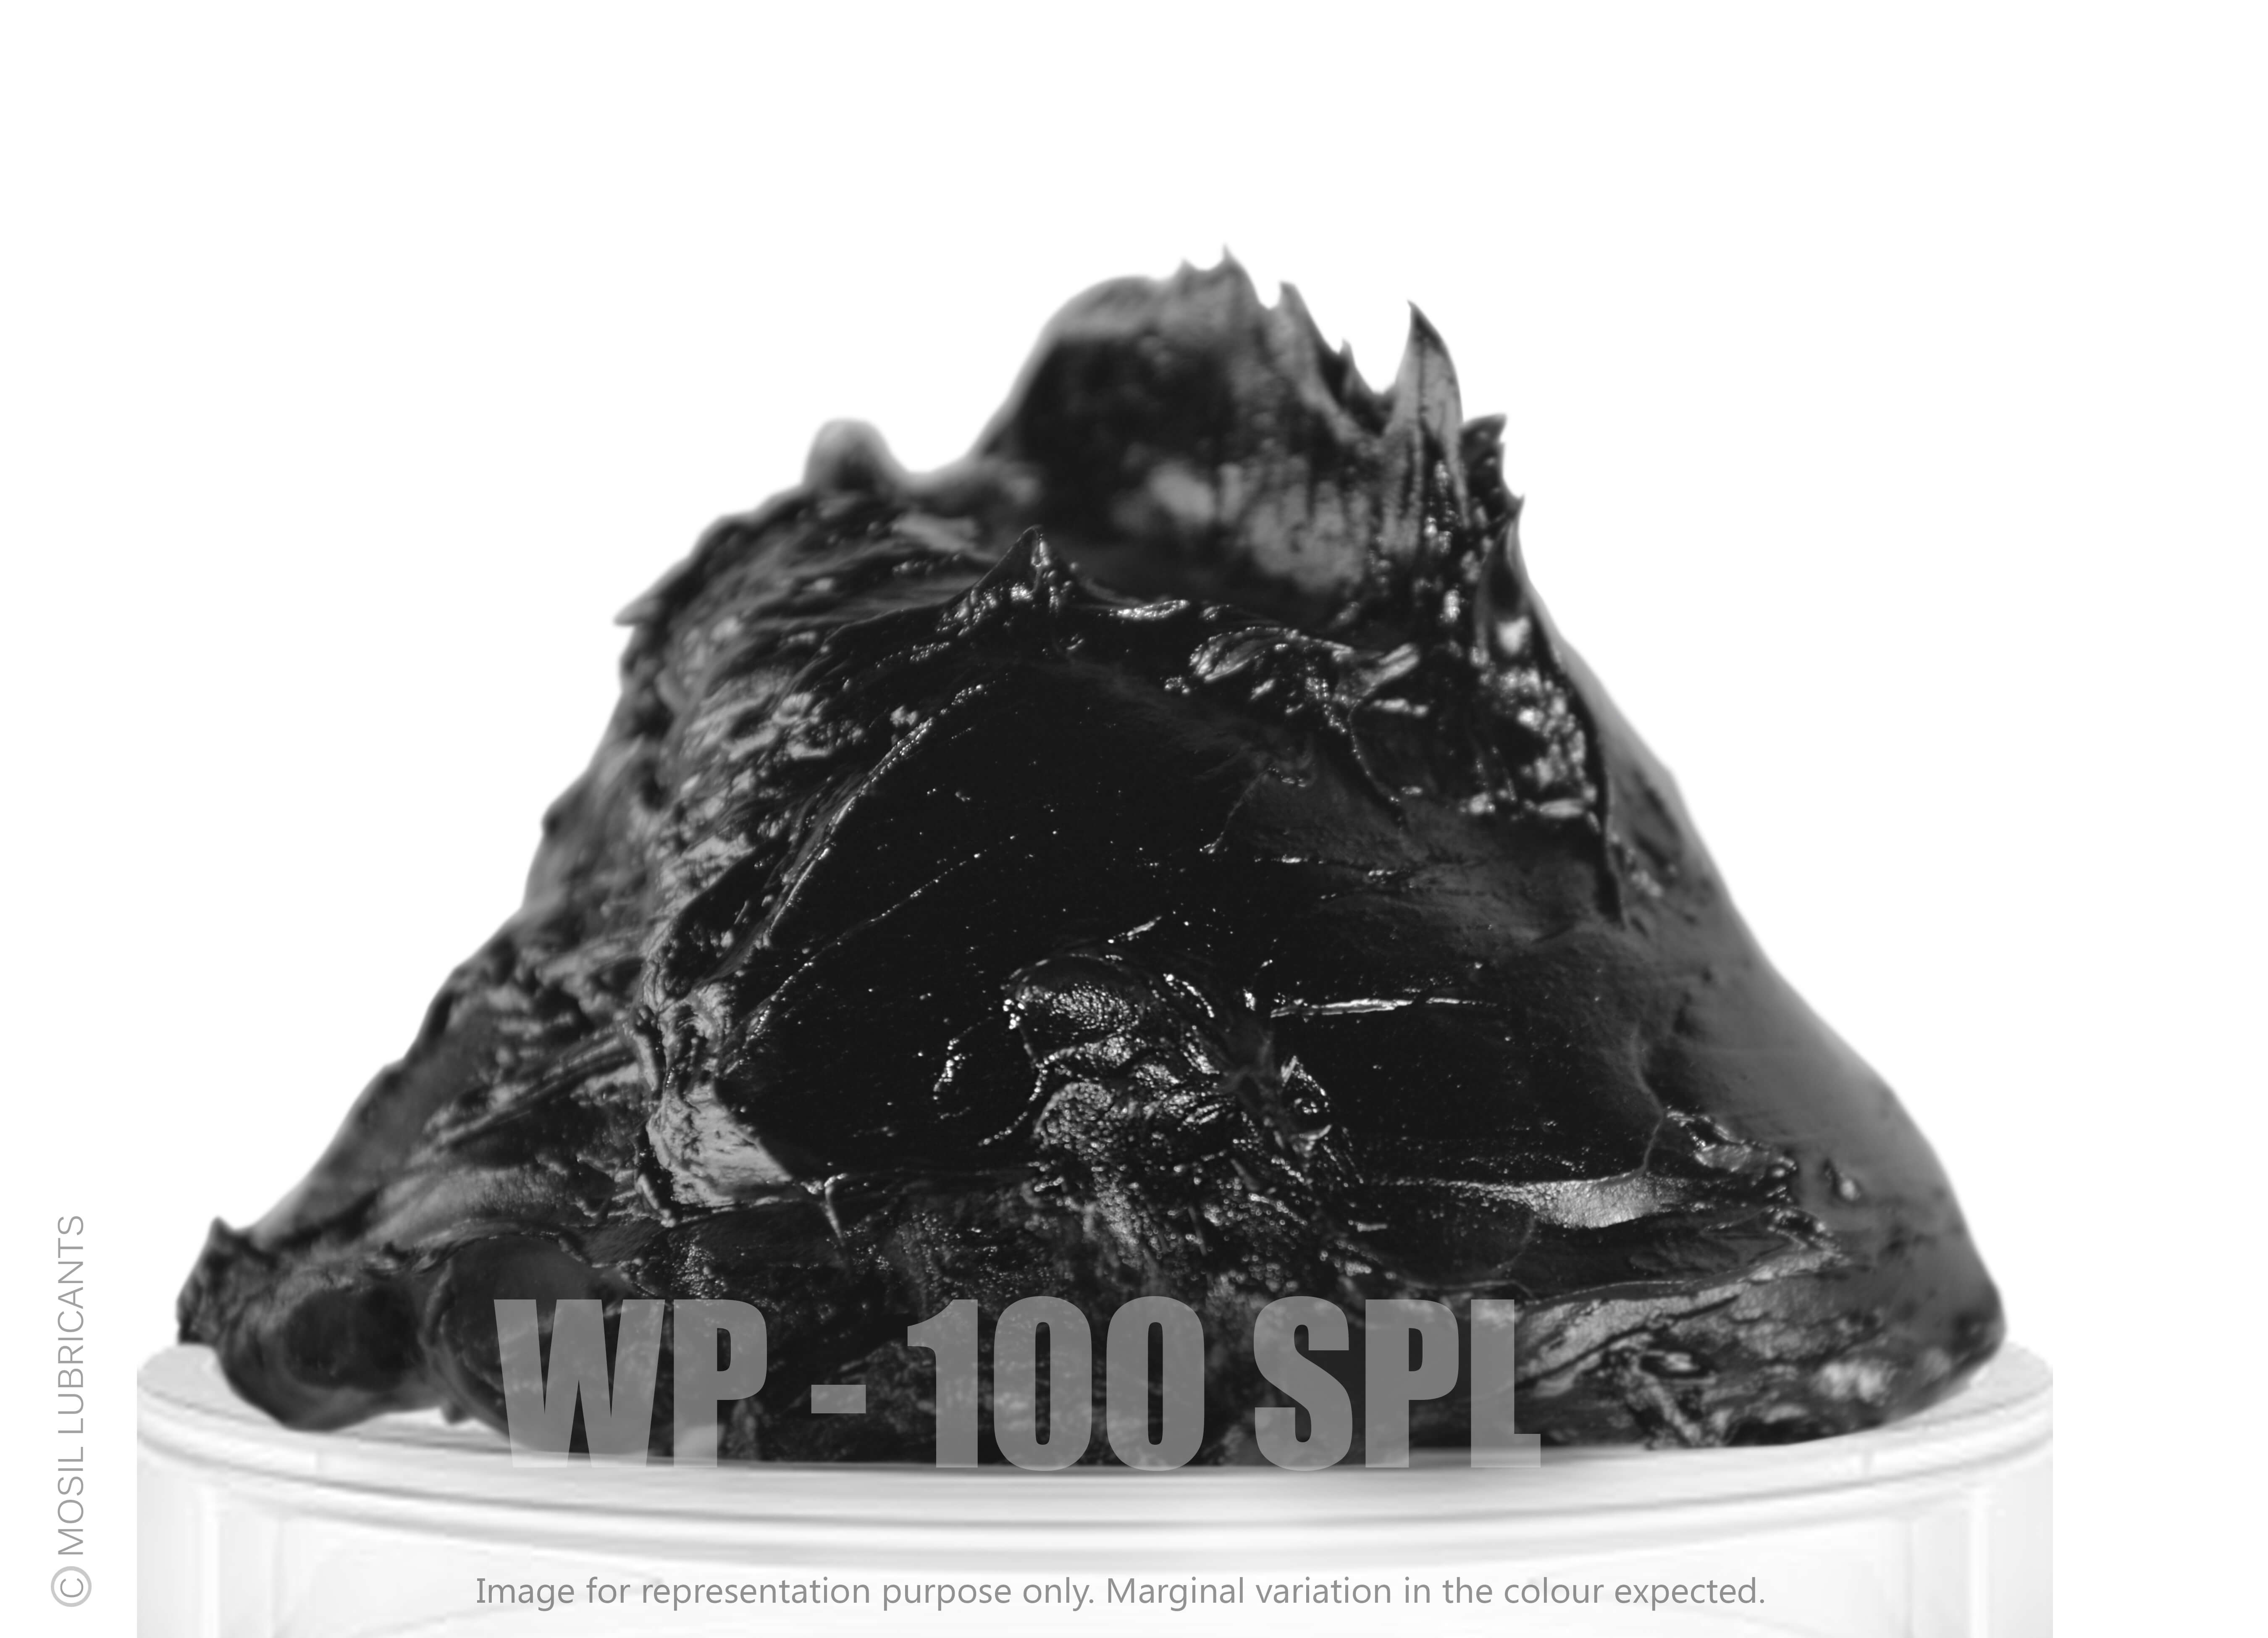 WP - 100 | spl Heavy Duty Adhesive Grease